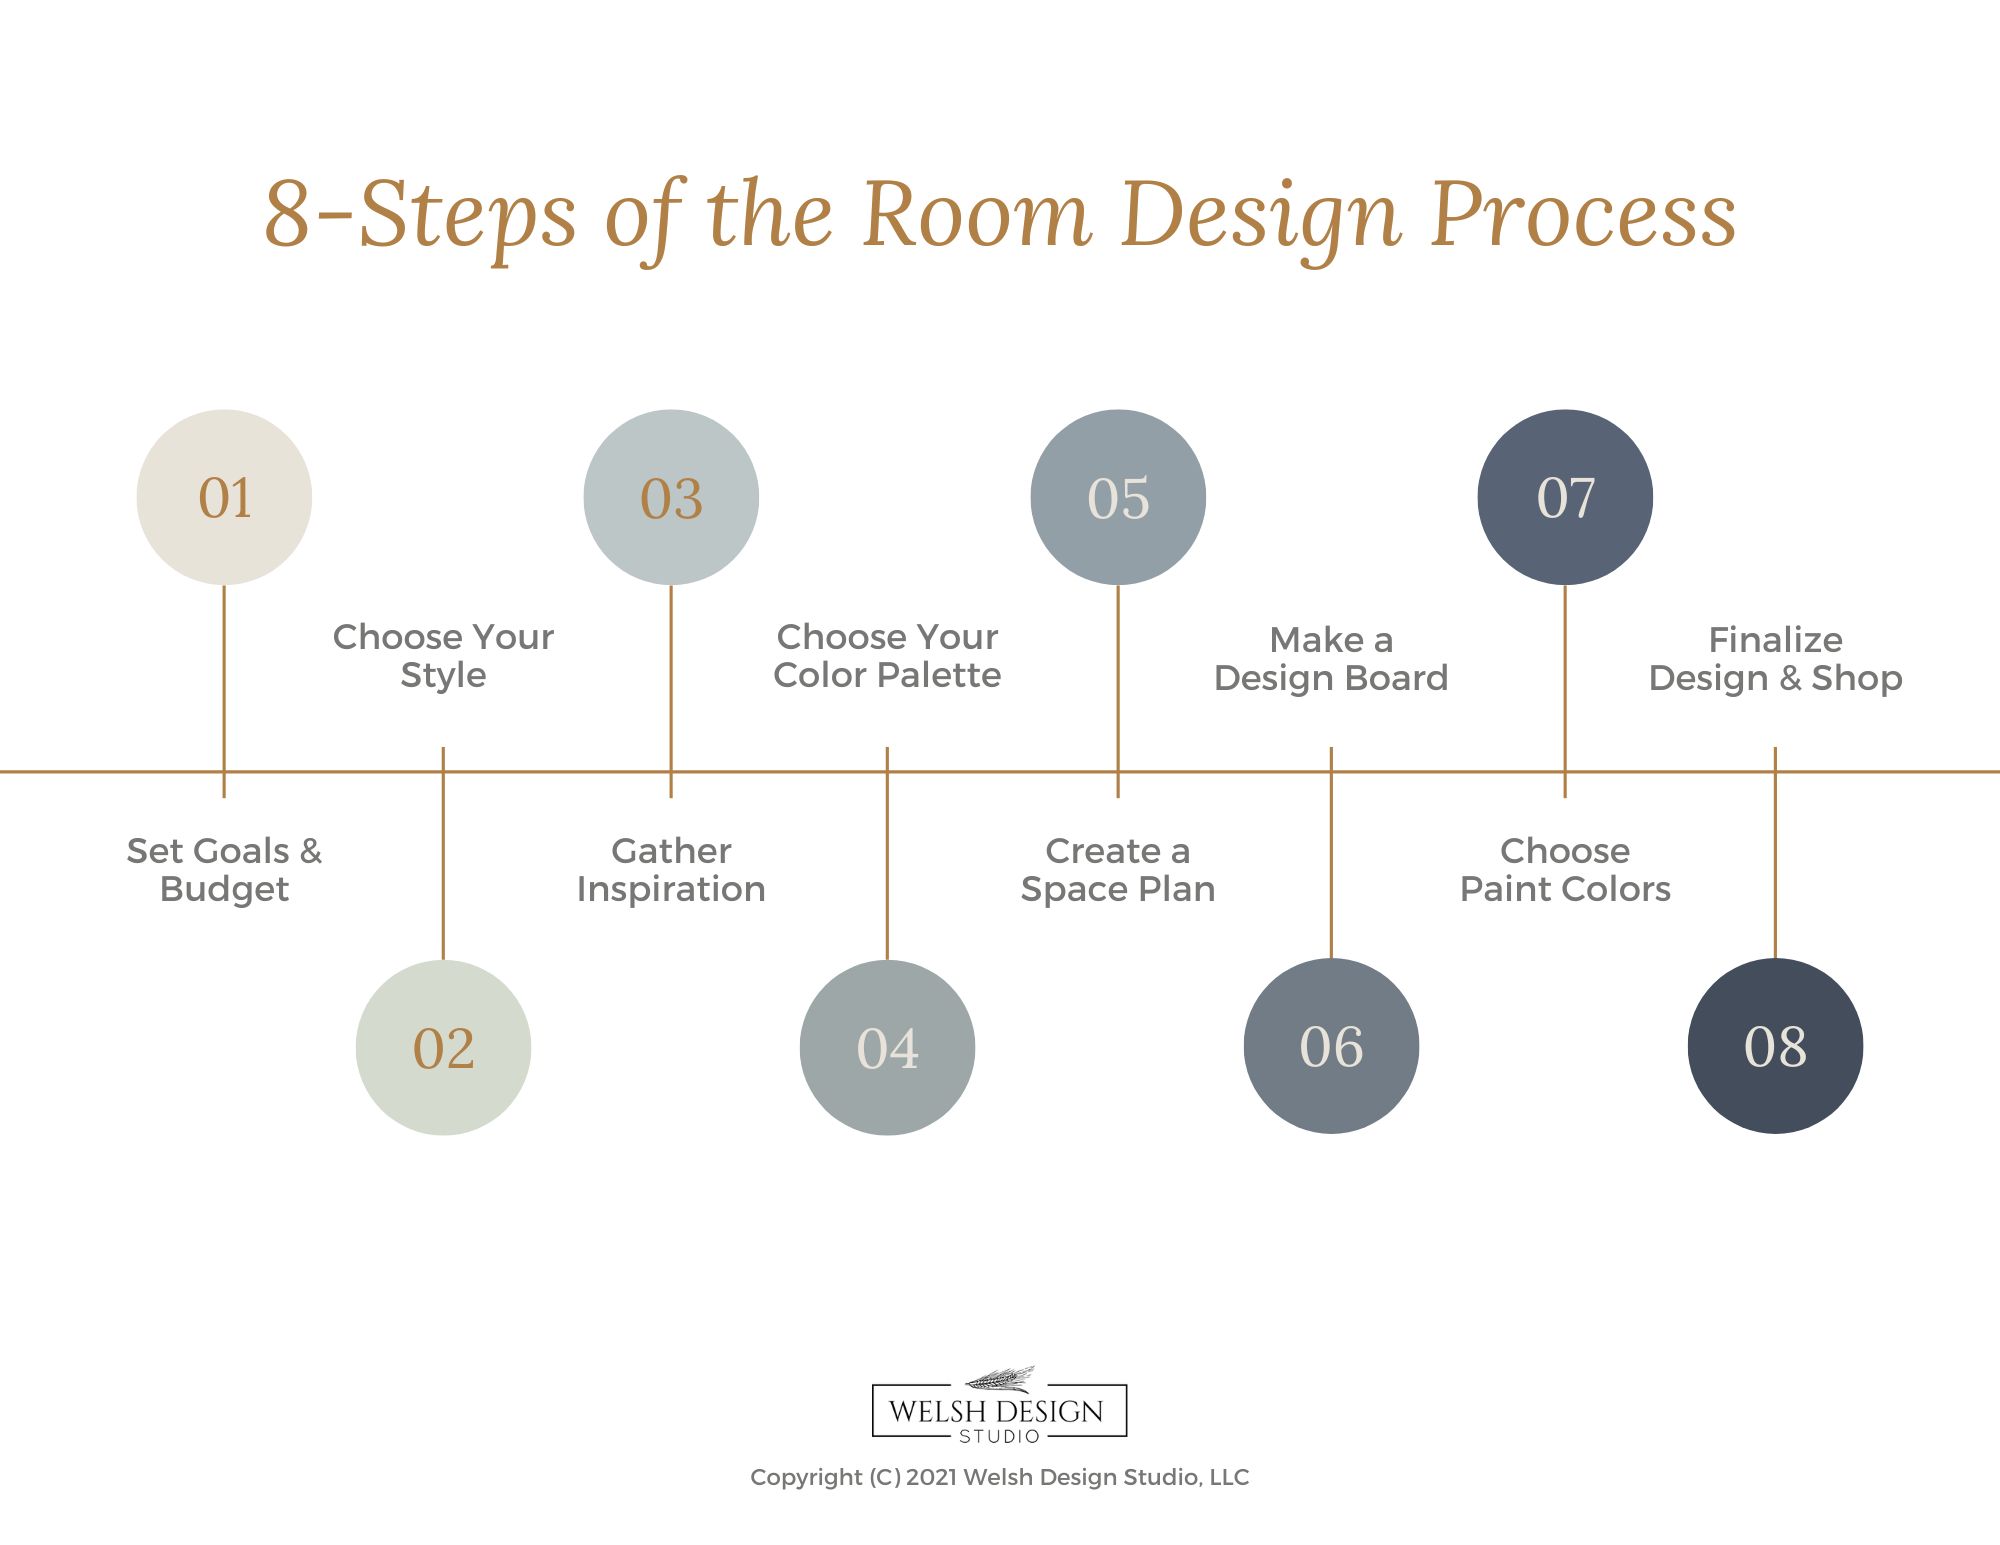 Interior Design Process Steps Home Interior Design